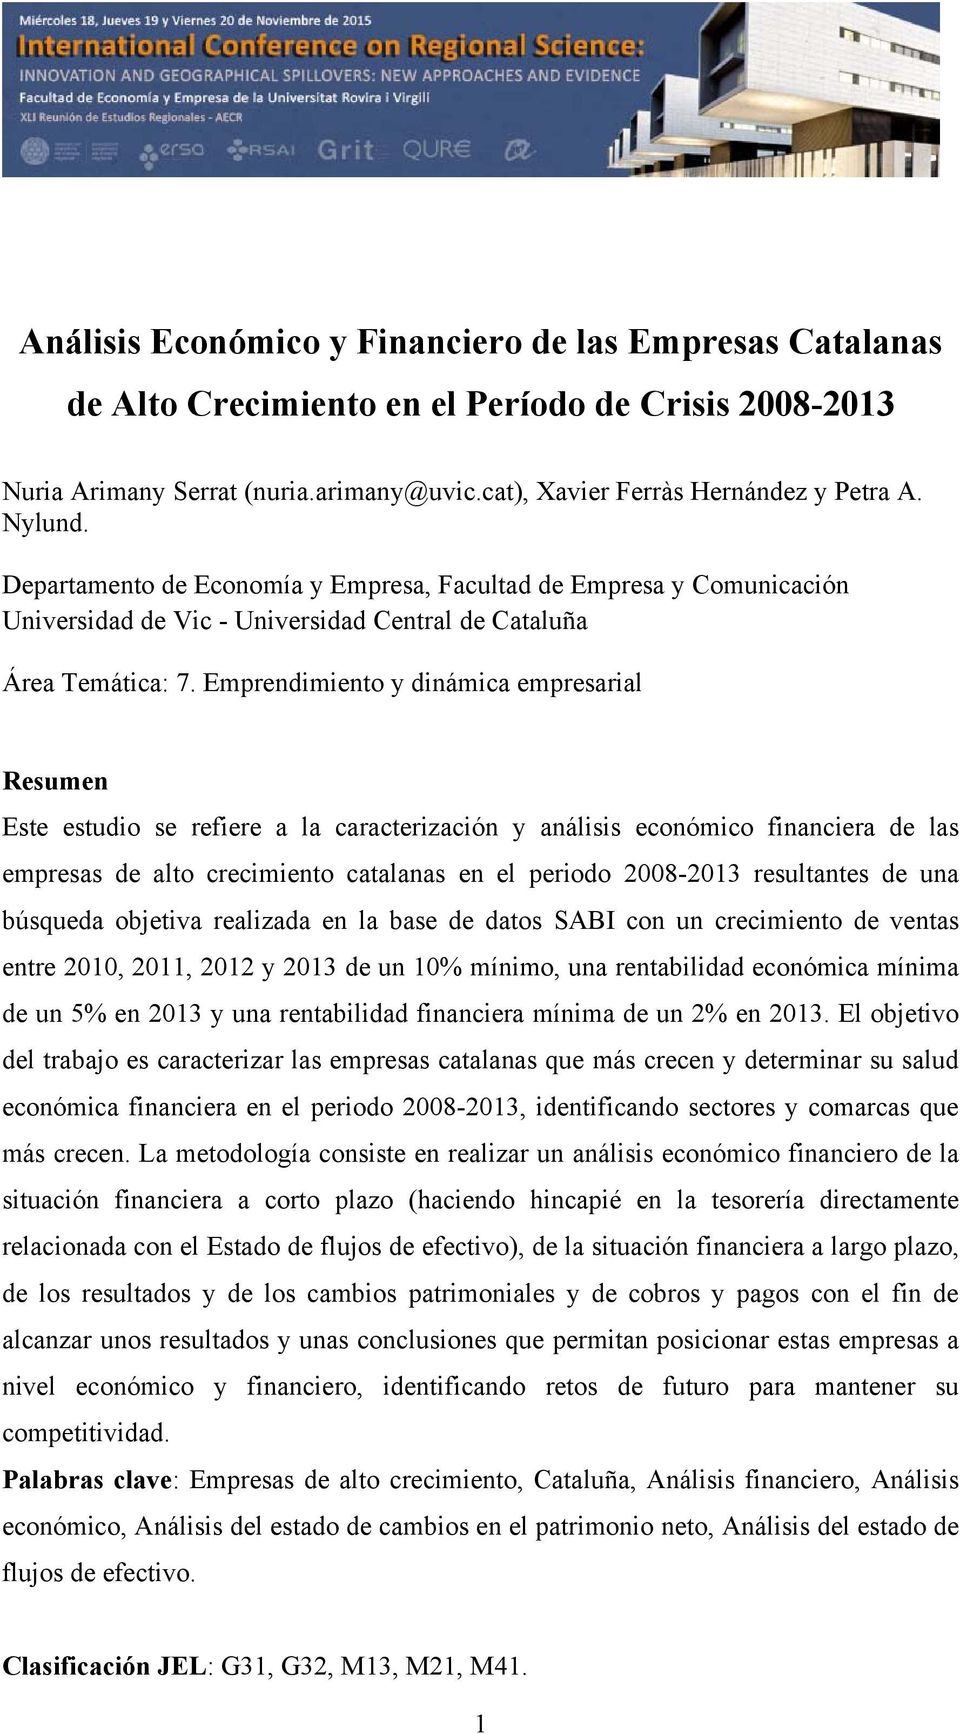 Emprendimiento y dinámica empresarial Resumen Este estudio se refiere a la caracterización y análisis económico financiera de las empresas de alto crecimiento catalanas en el periodo 2008-2013